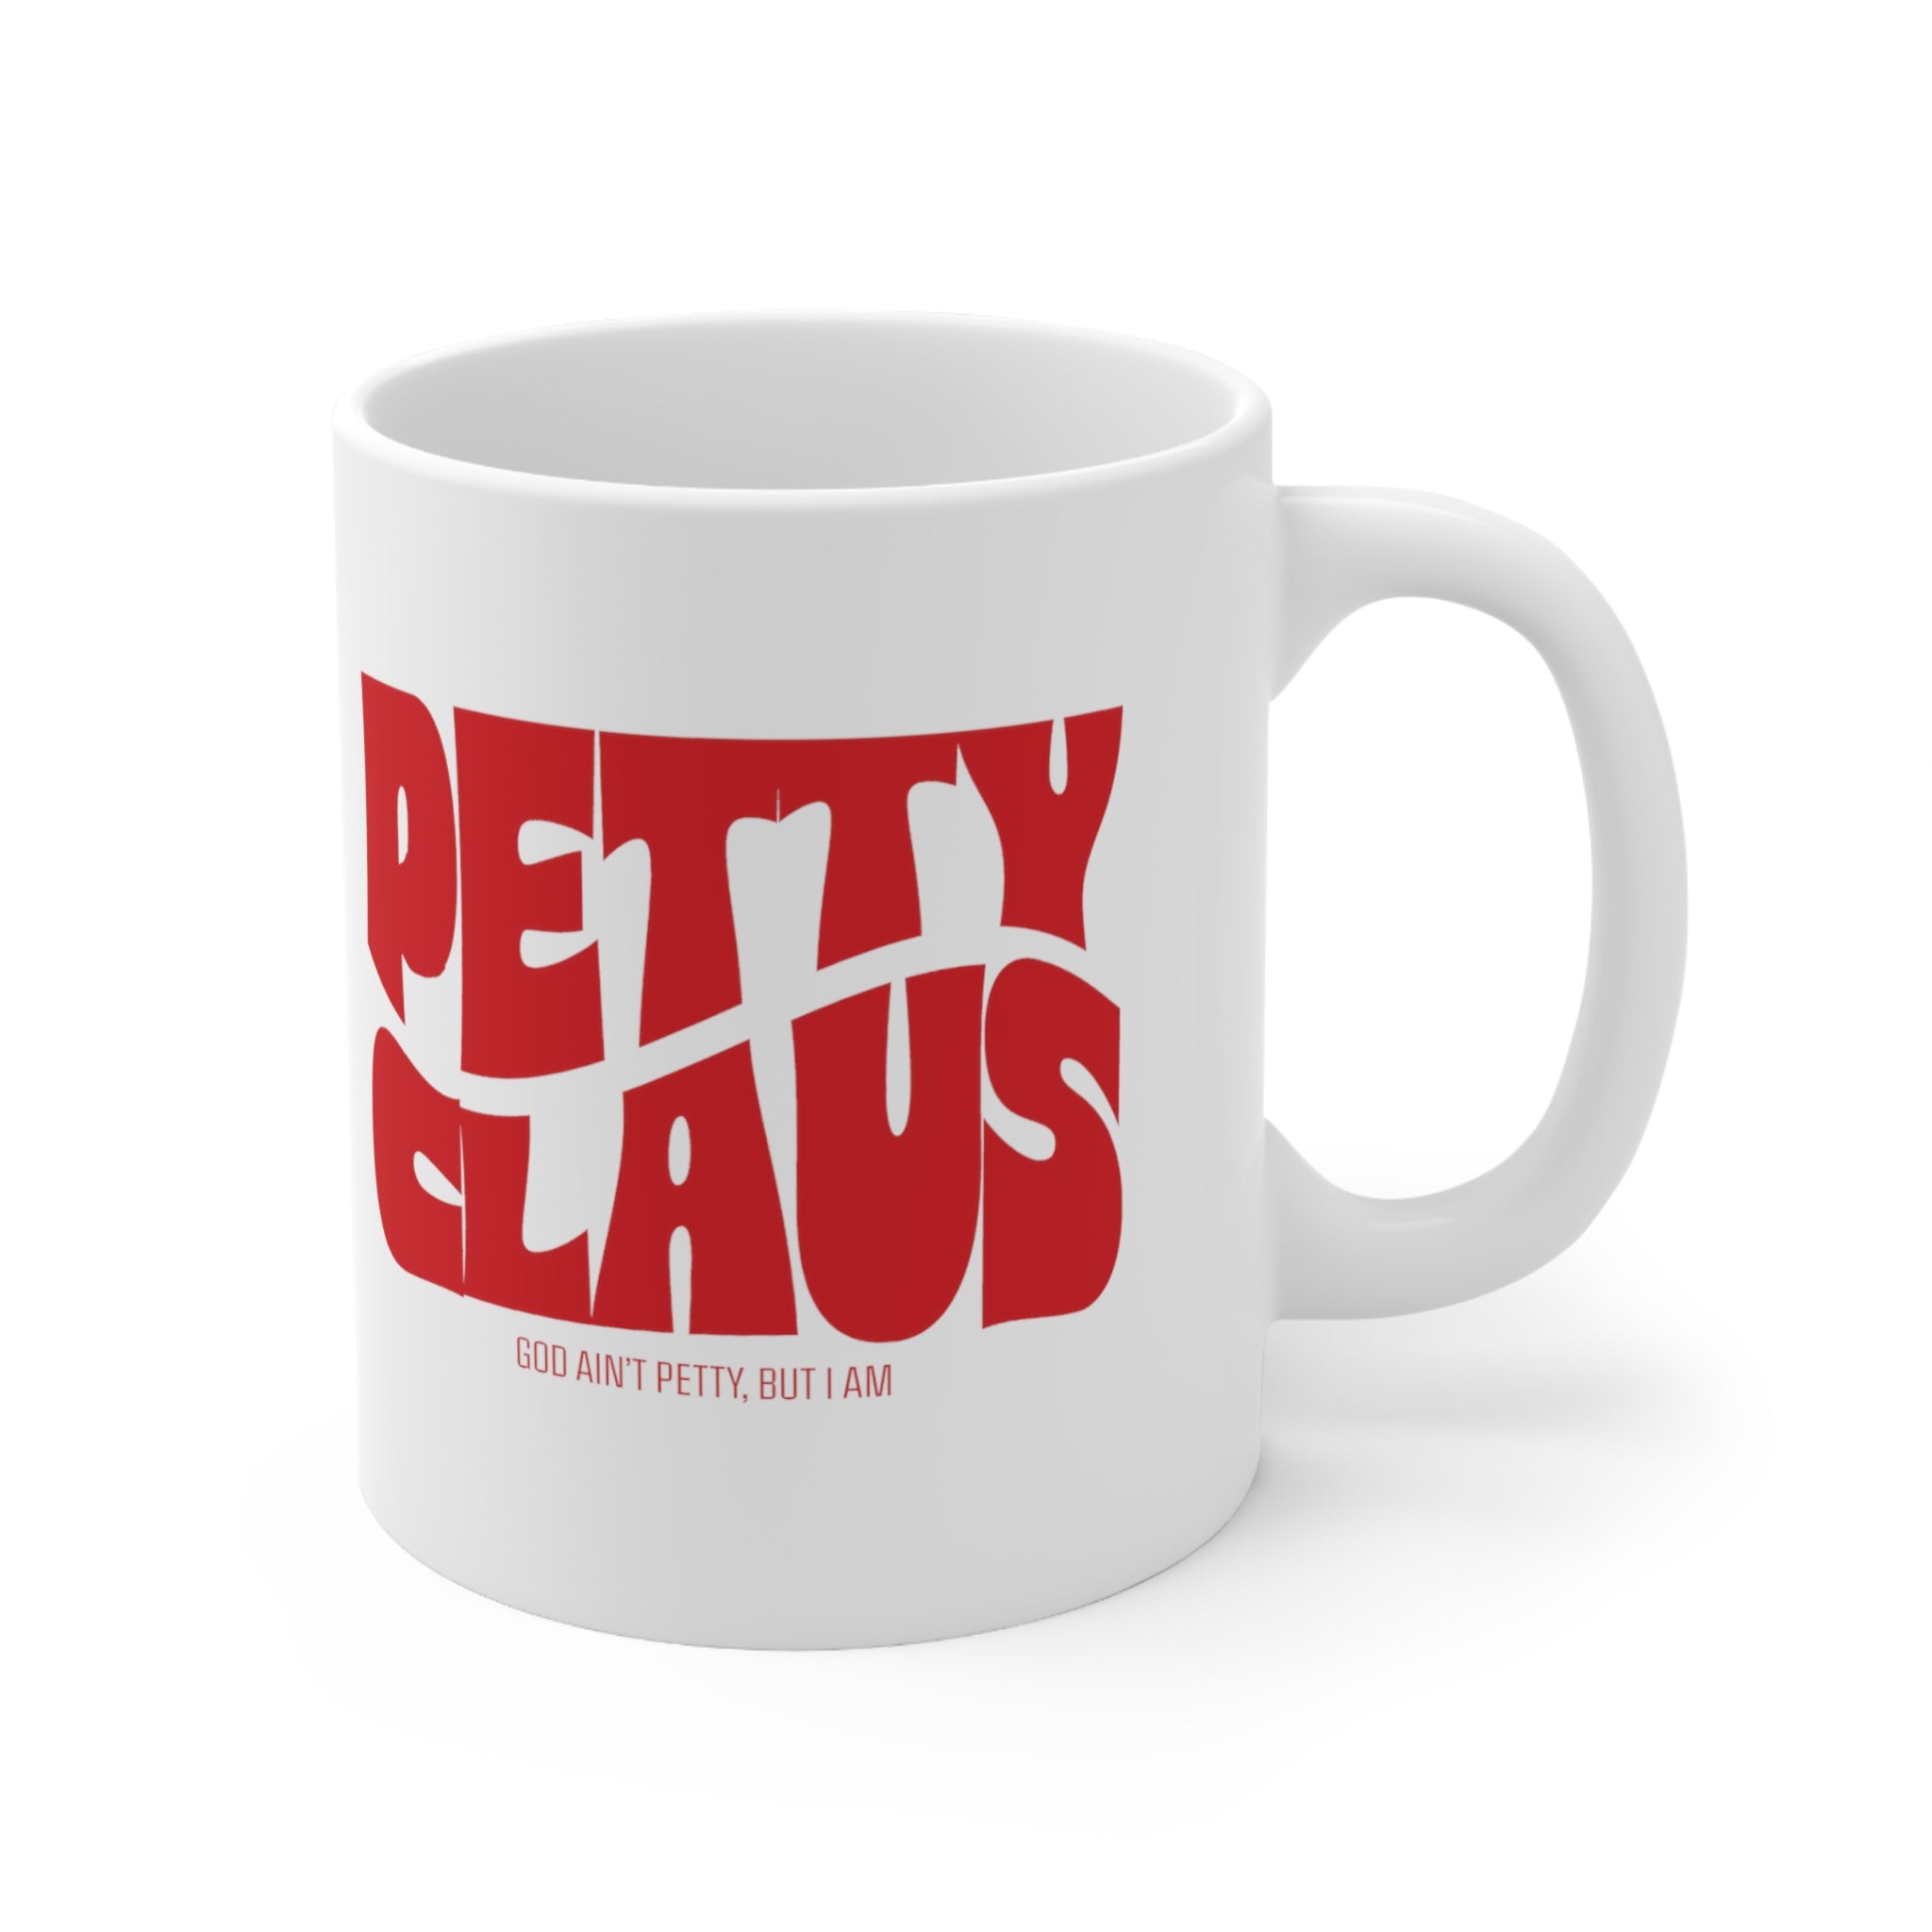 Petty Claus Retro Mug 11oz (White & Red )-Mug-The Original God Ain't Petty But I Am